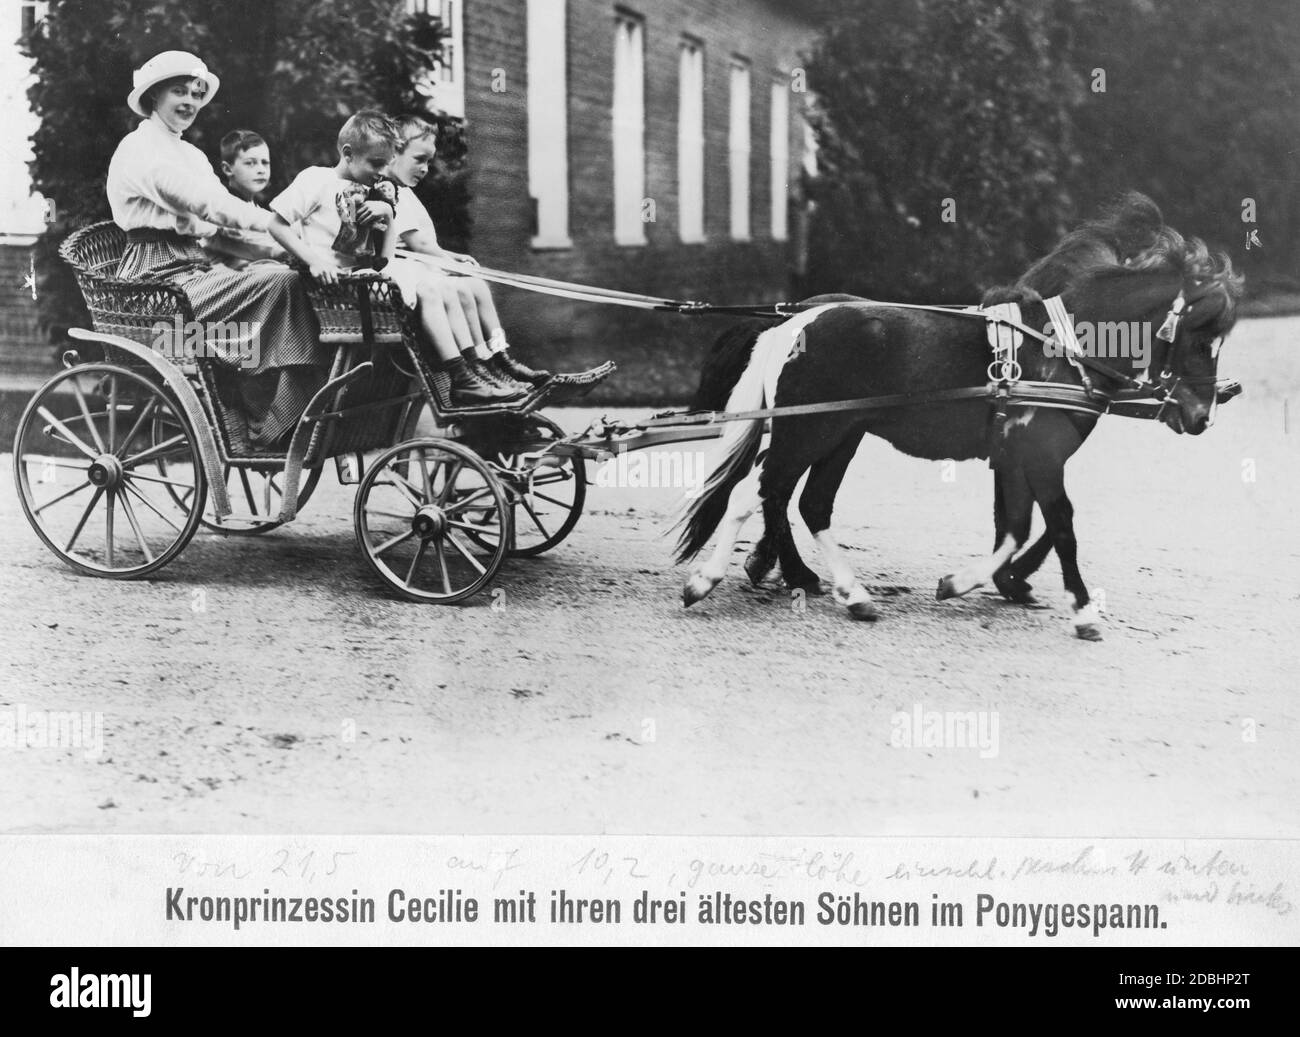 La princesa de la Corona Cecilie y sus tres hijos mayores Wilhelm, Louis Ferdinand y Hubertus de Prusia (de izquierda a derecha) se sientan en un carro de bast tejido y son tirados por dos ponis. Louis Ferdinand sostiene dos muñecas, entre ellas un mono. La foto fue tomada en 1914. Foto de stock